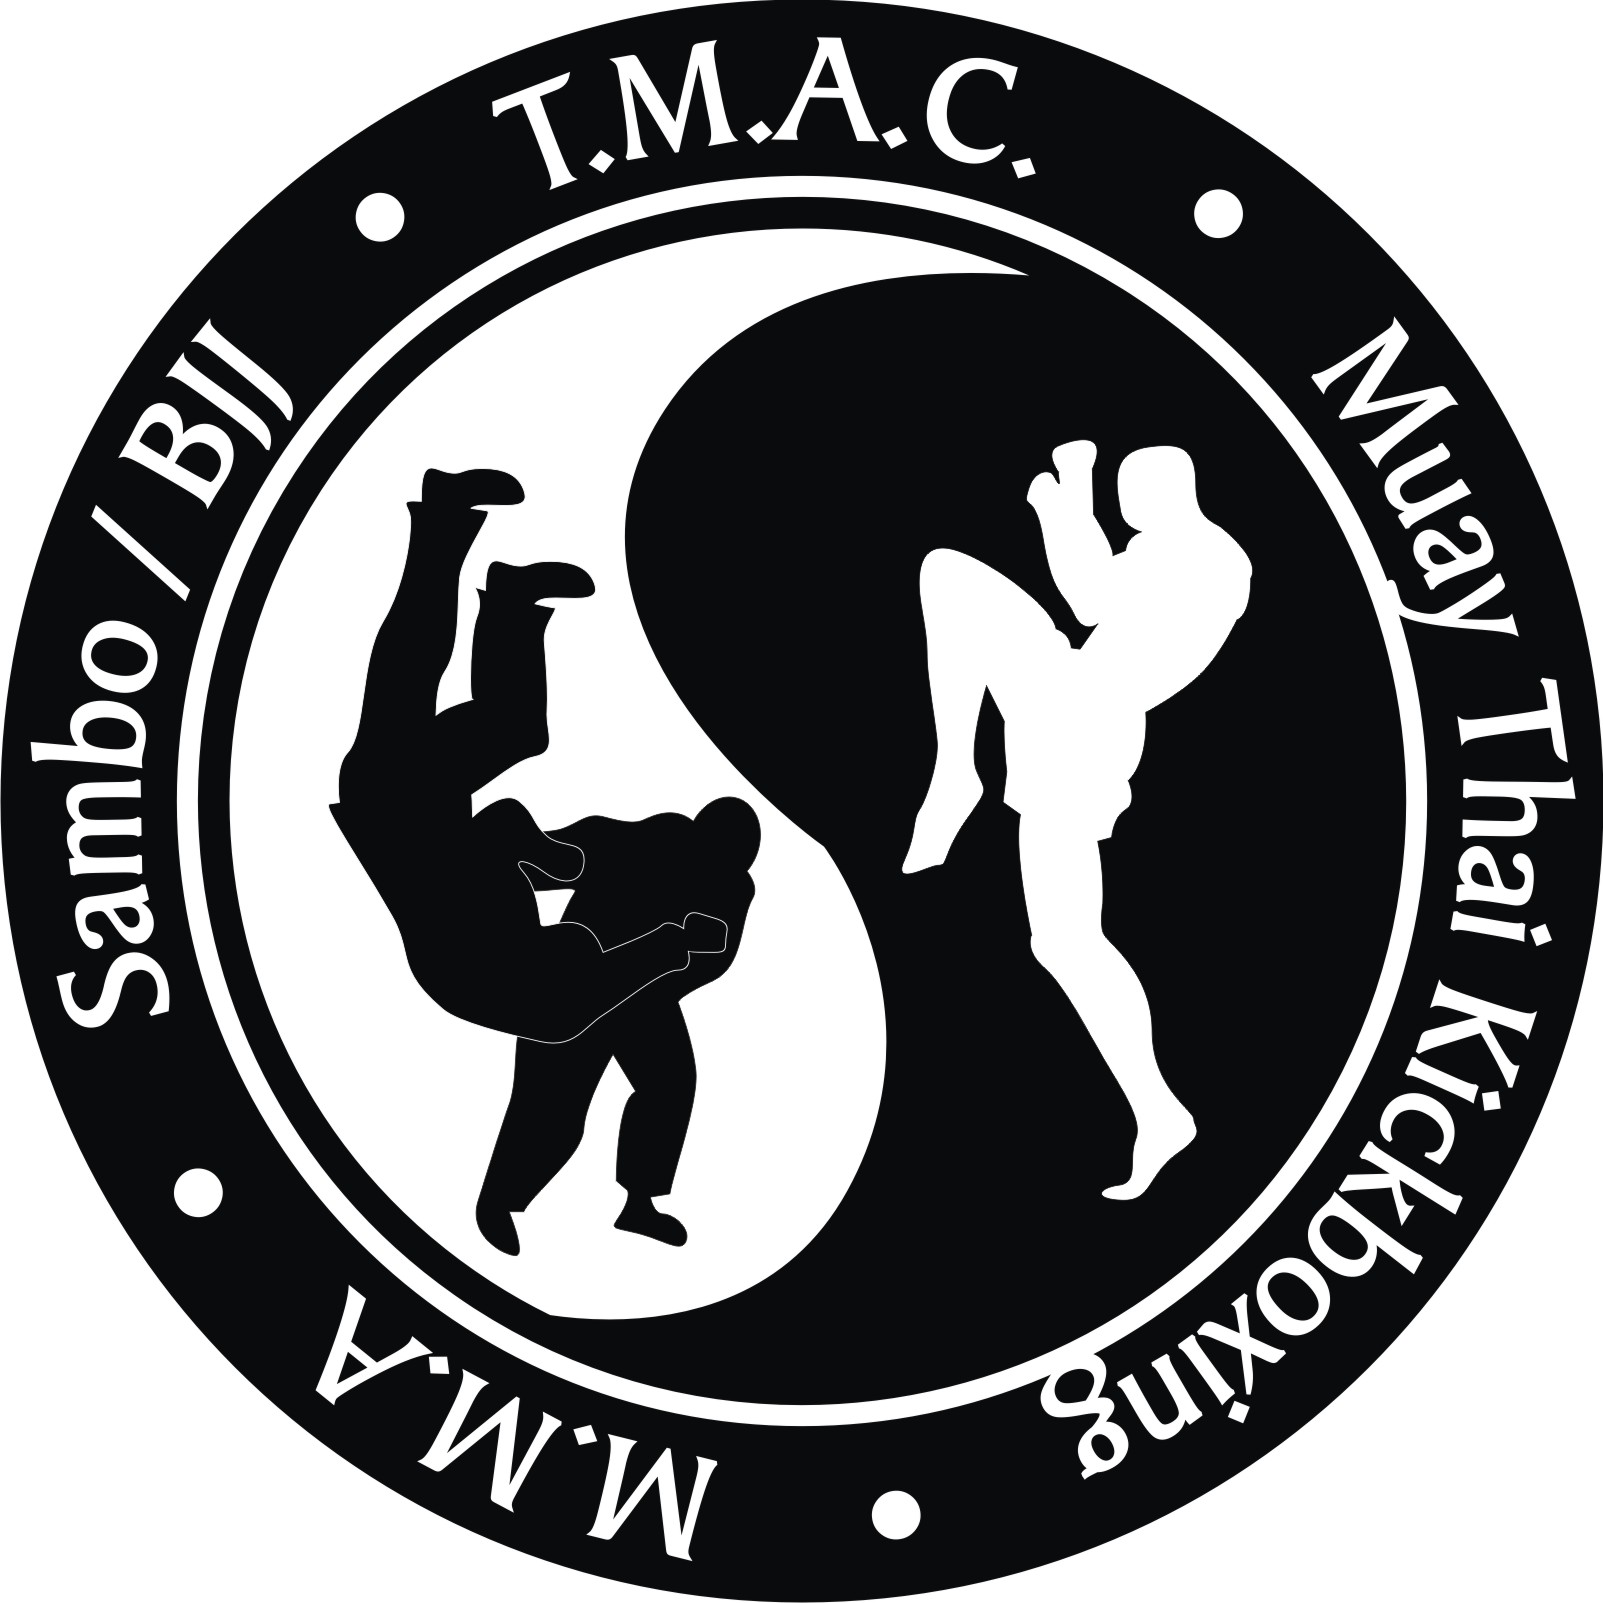 Kontact Martial Arts Academy | Midland, ON